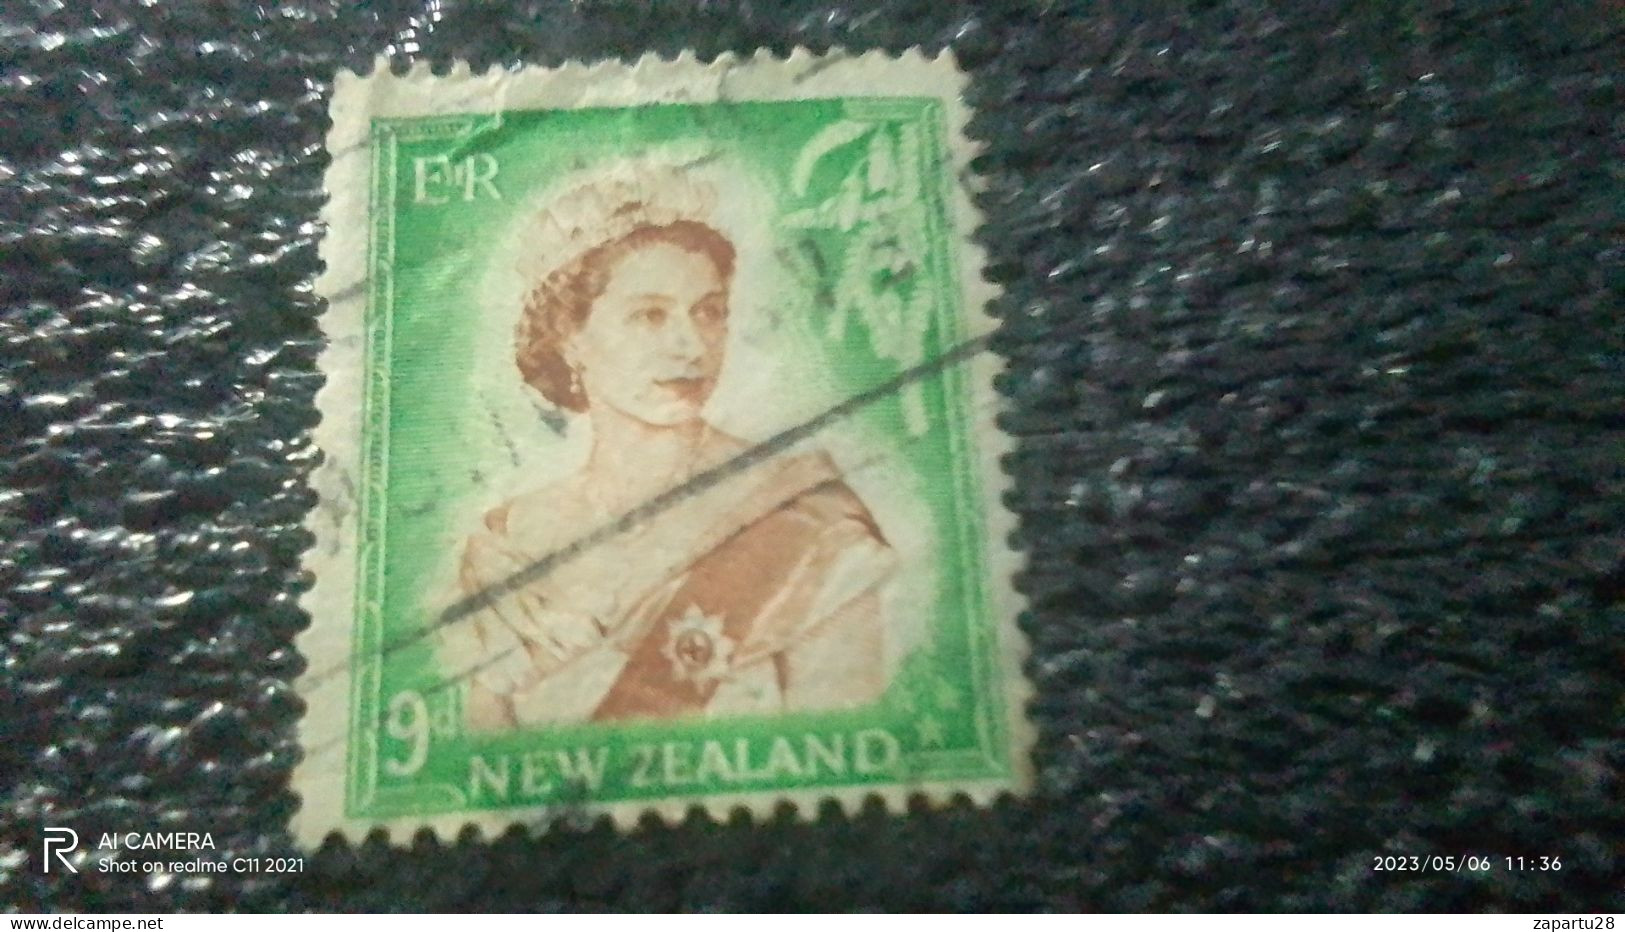 YENİ ZELANDA-  1950-60              9P               USED - Gebruikt